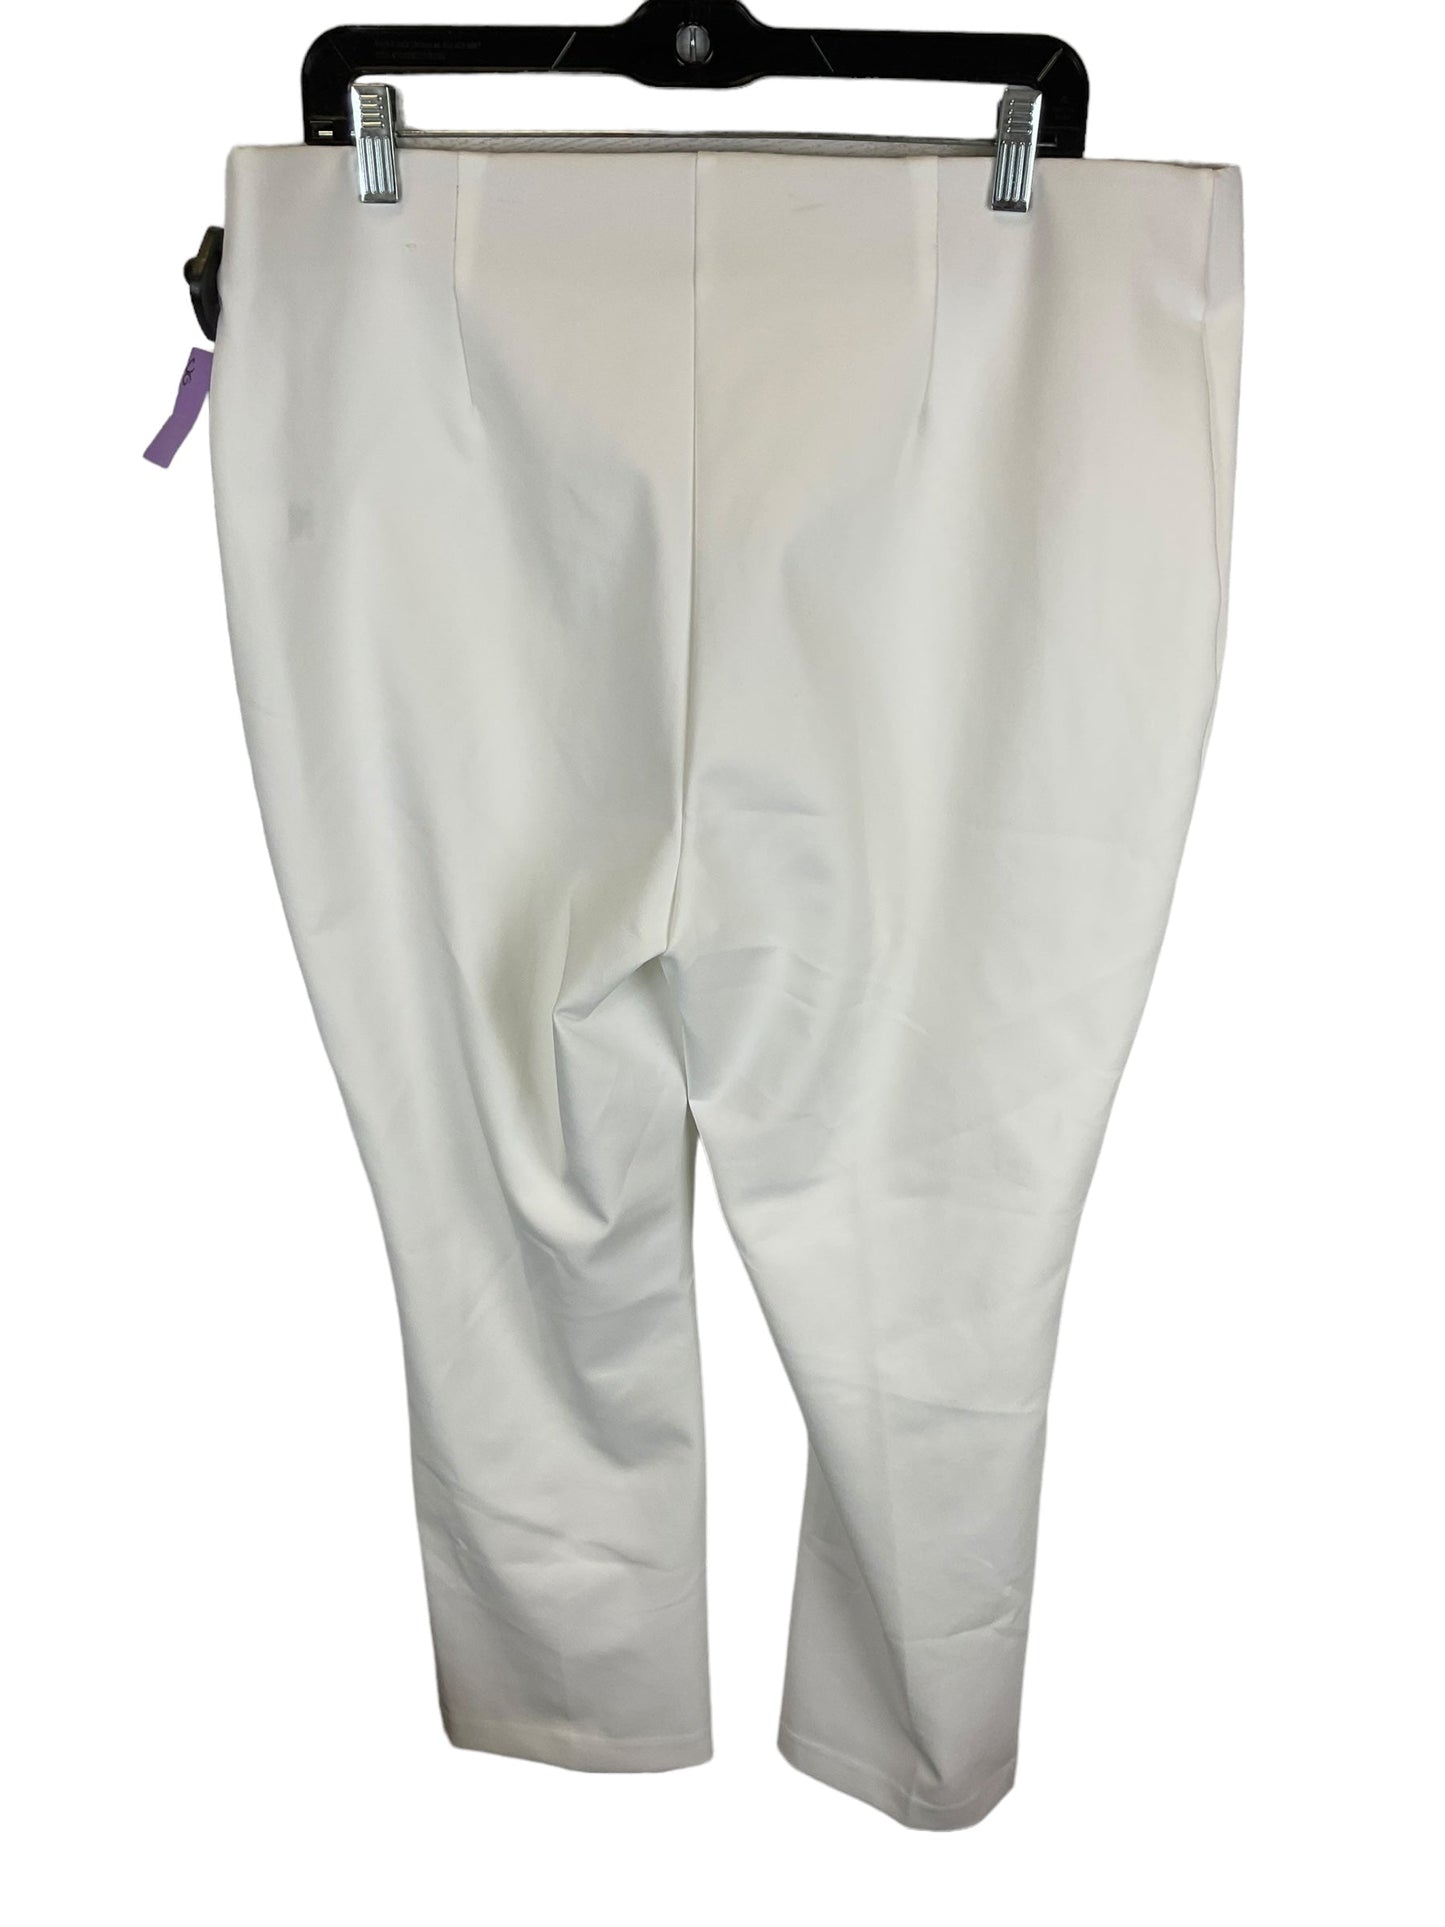 White Pants Dress Rachel Zoe, Size 16